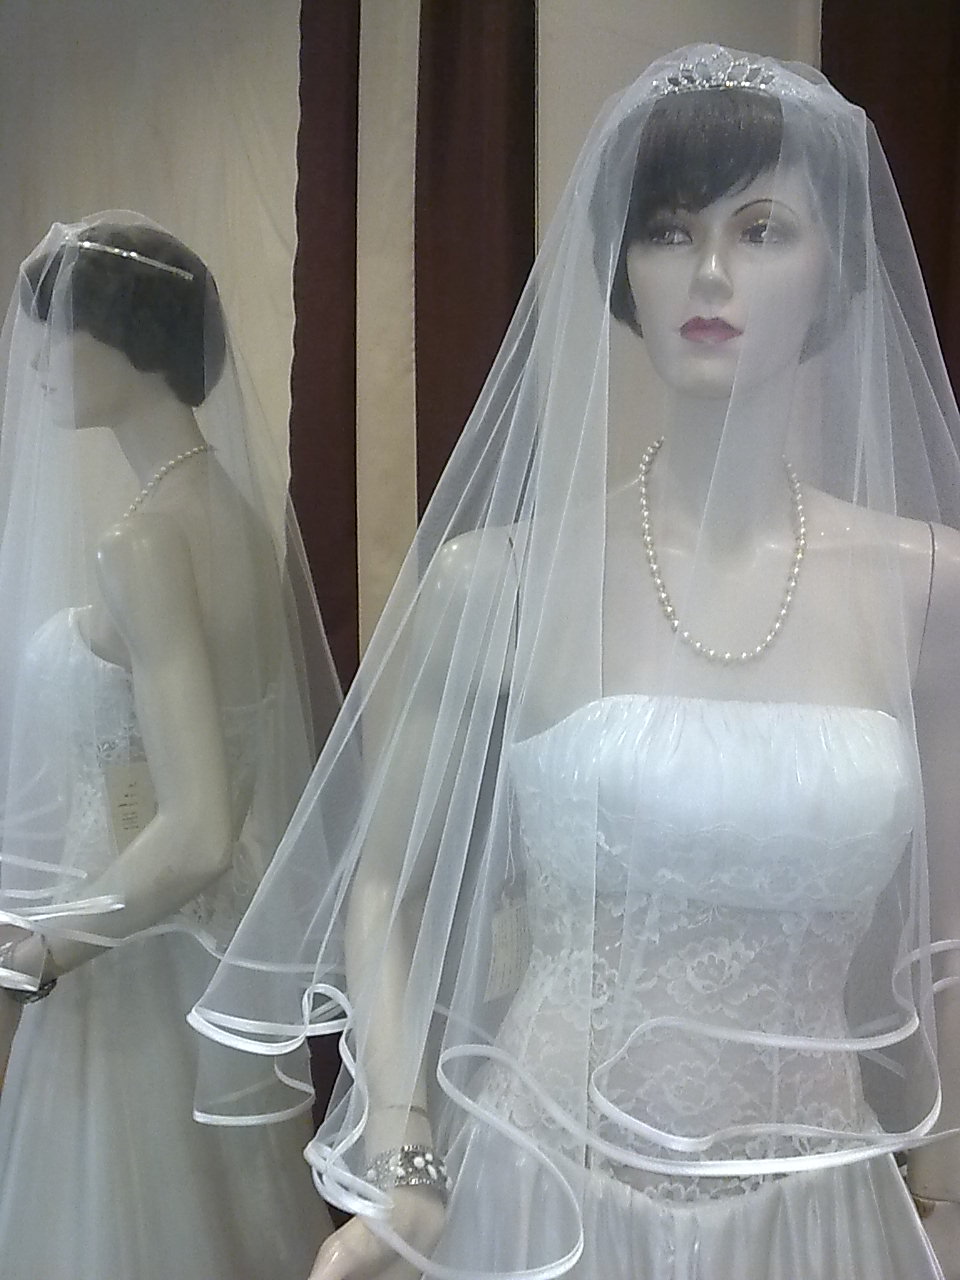 svatební šaty Vinata -zavoj -400,-